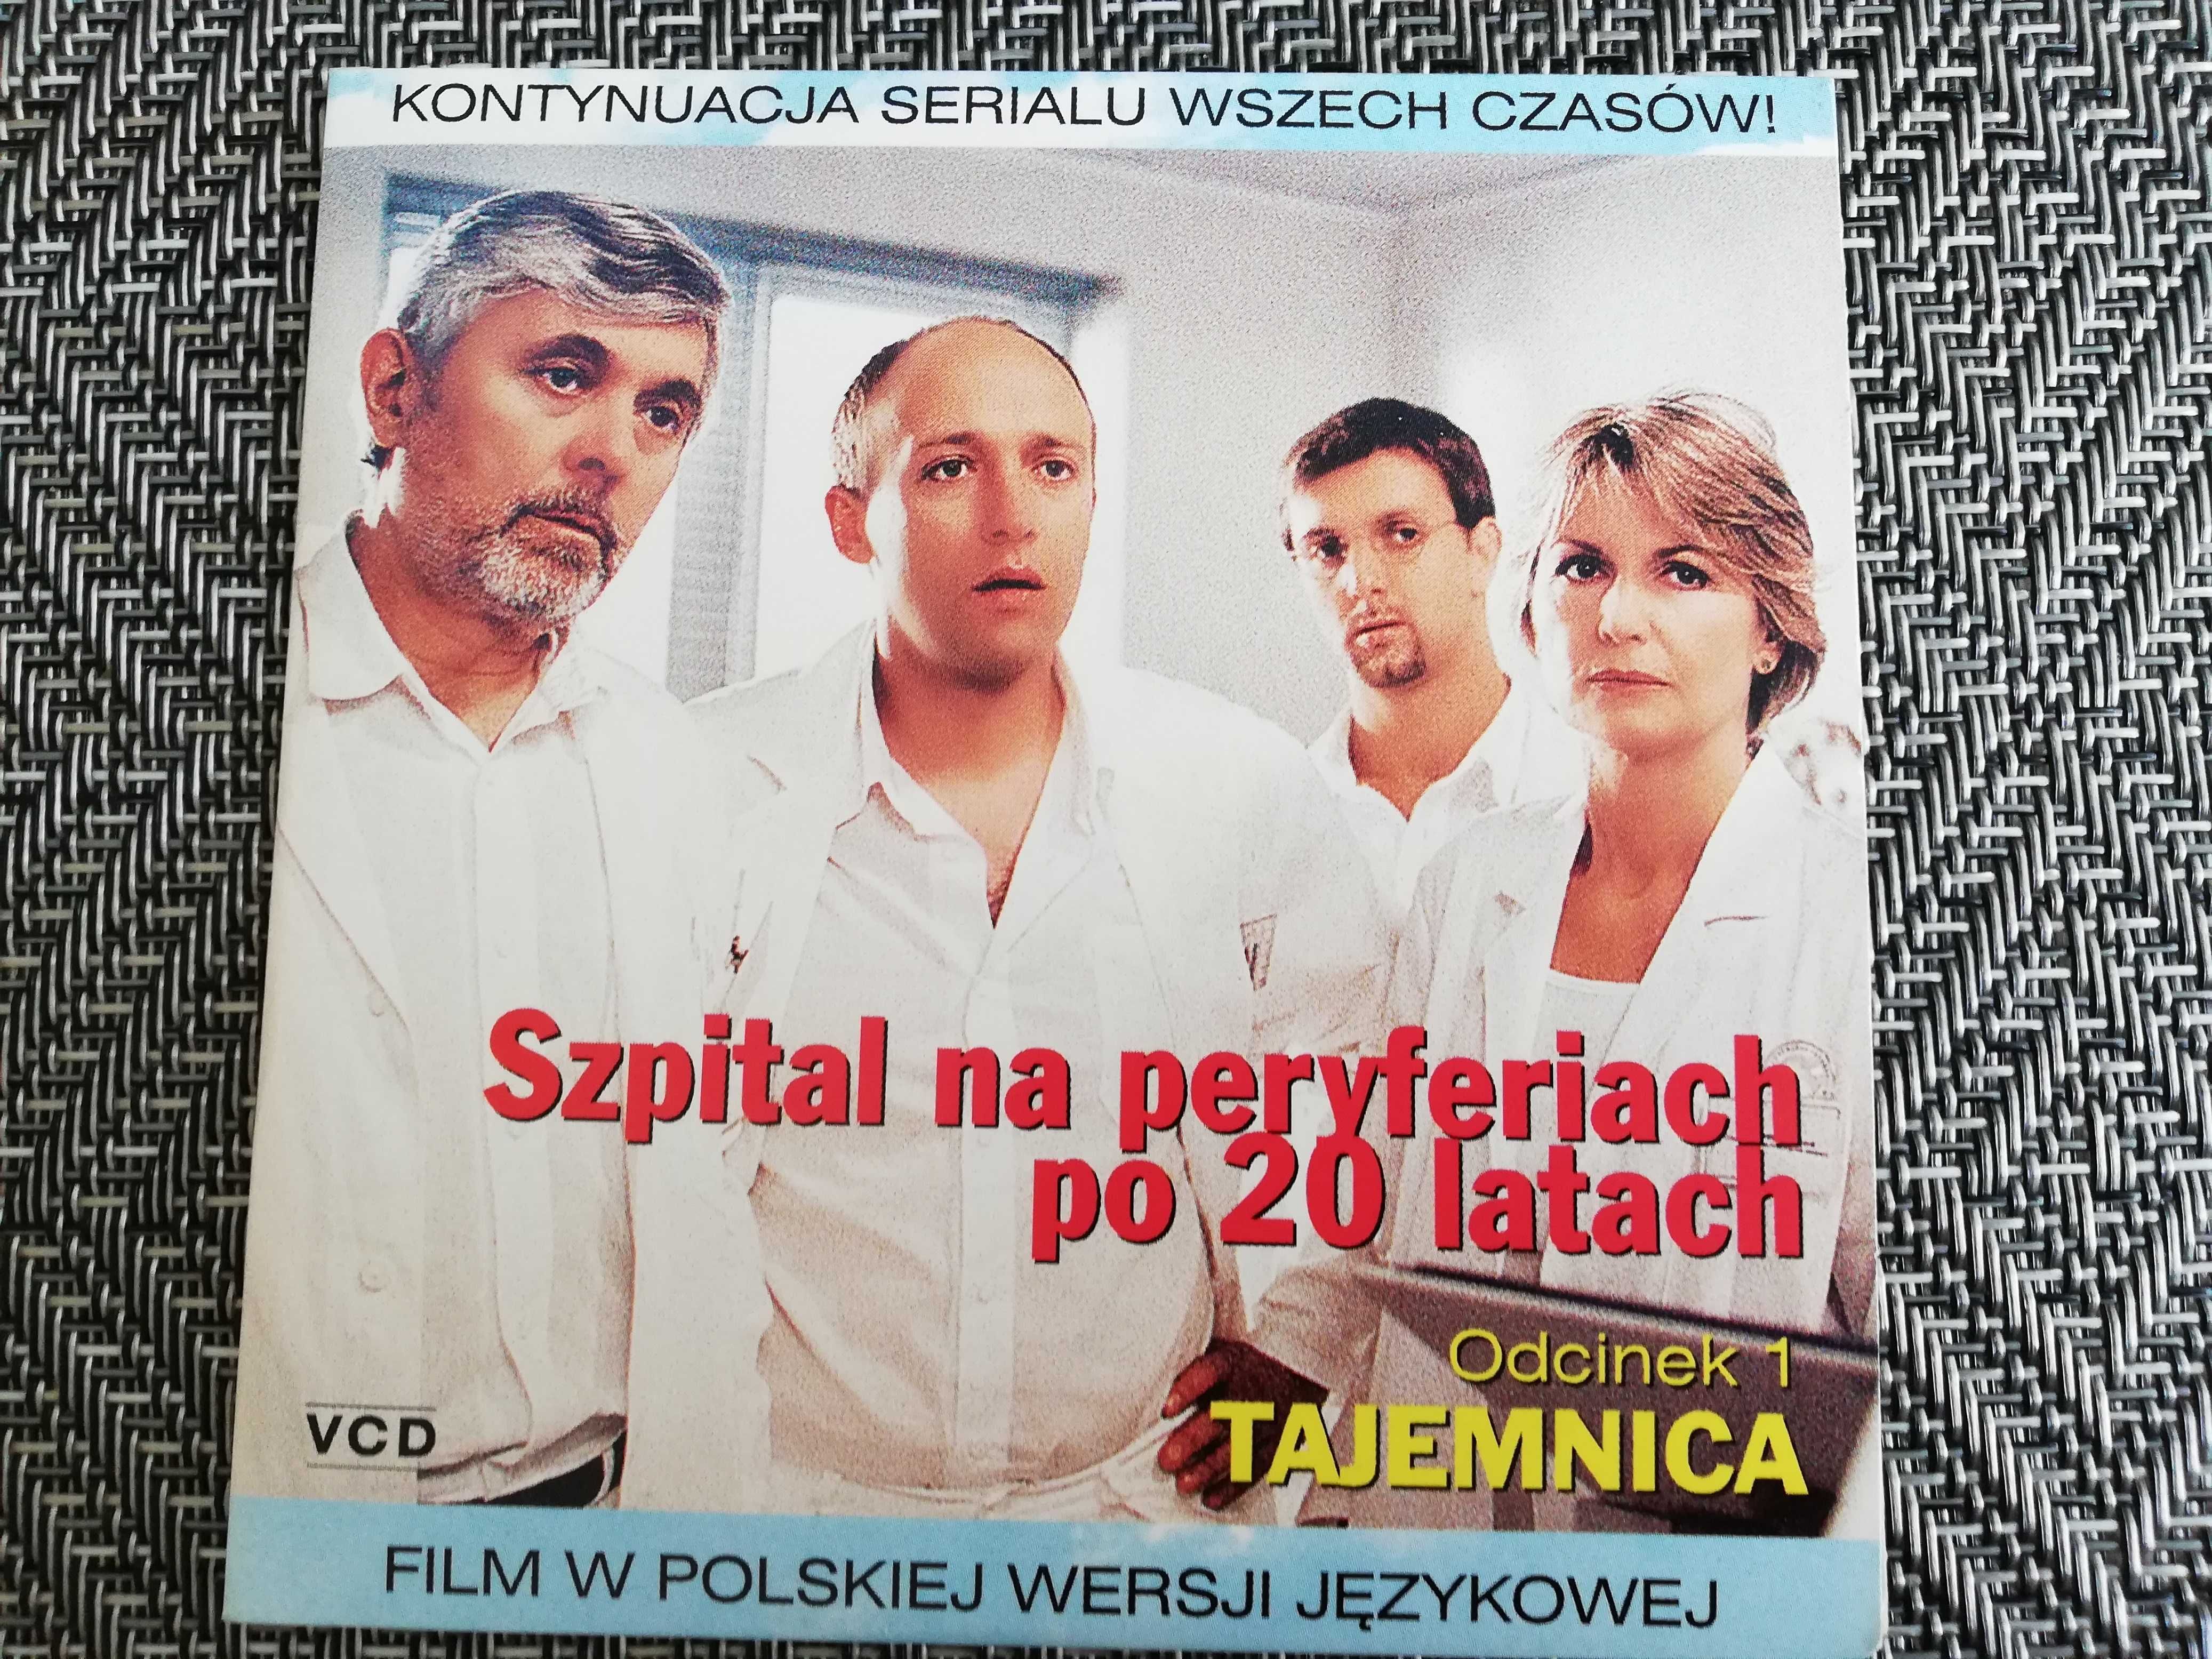 Film VCD - Szpital na peryferiach po 20 latach - odc. 1 Tajemnica